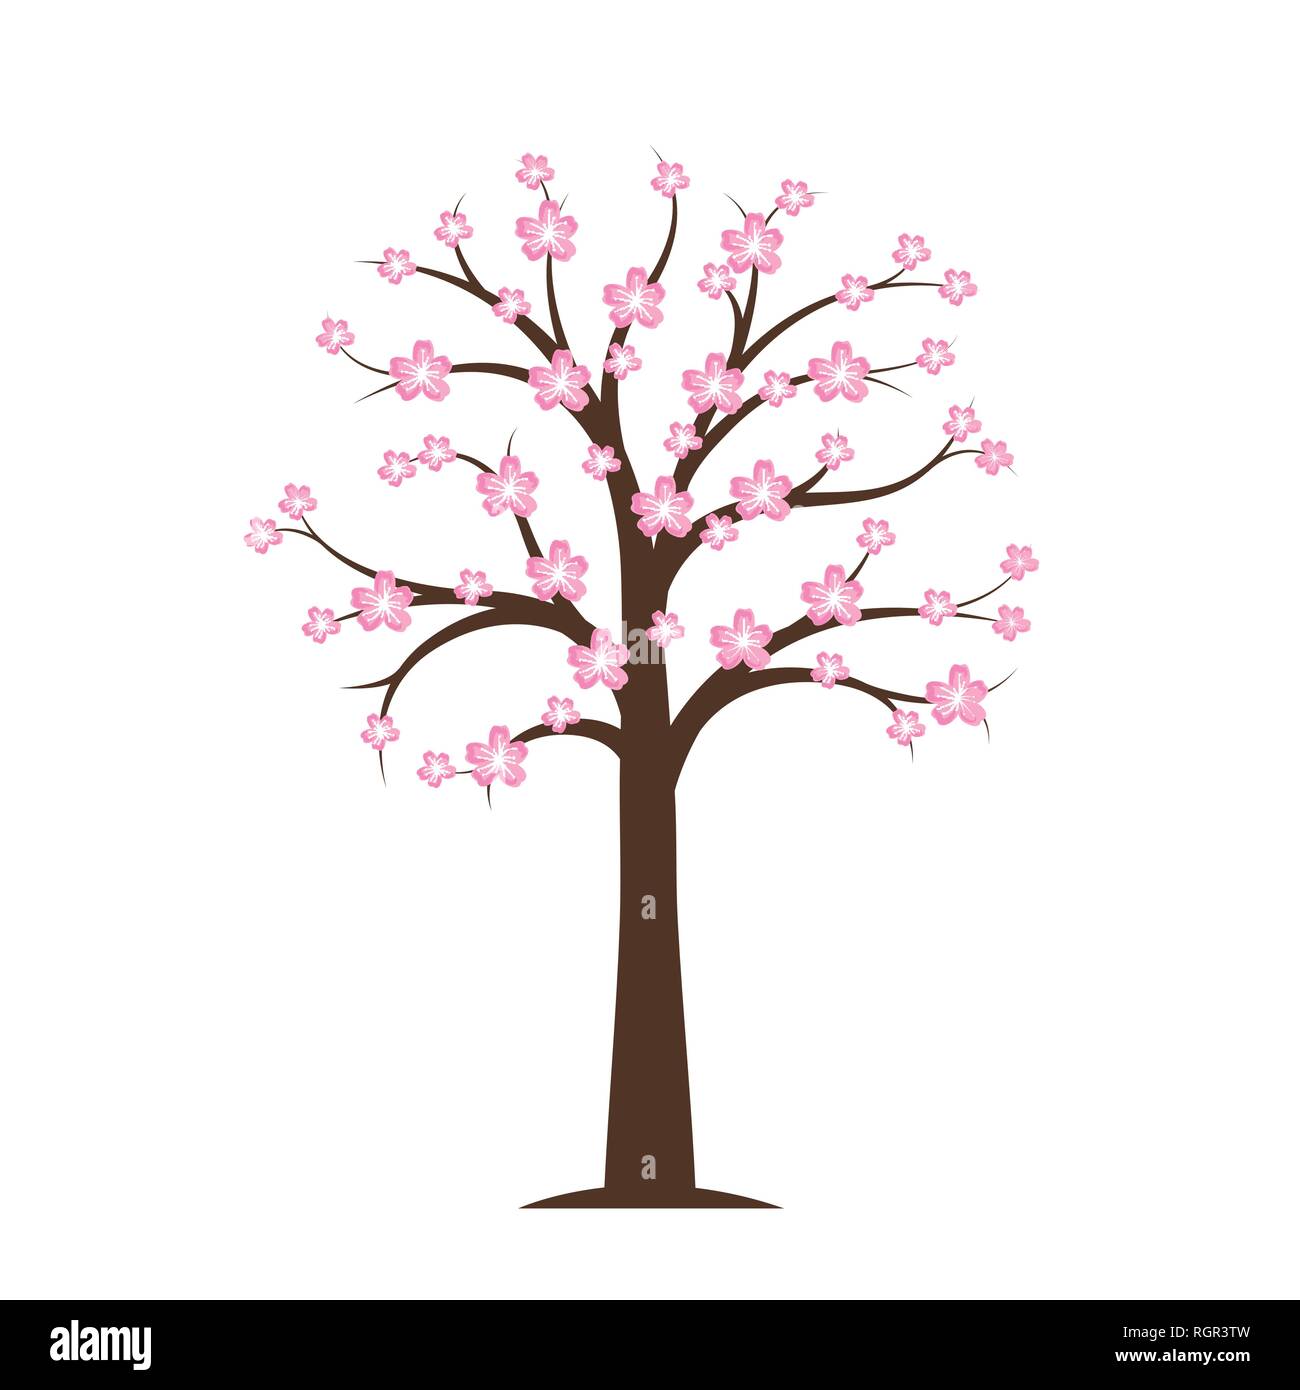 Rosa blühenden Kirschbaum im Frühjahr auf weißem Hintergrund Vektor-illustration EPS 10. Stock Vektor